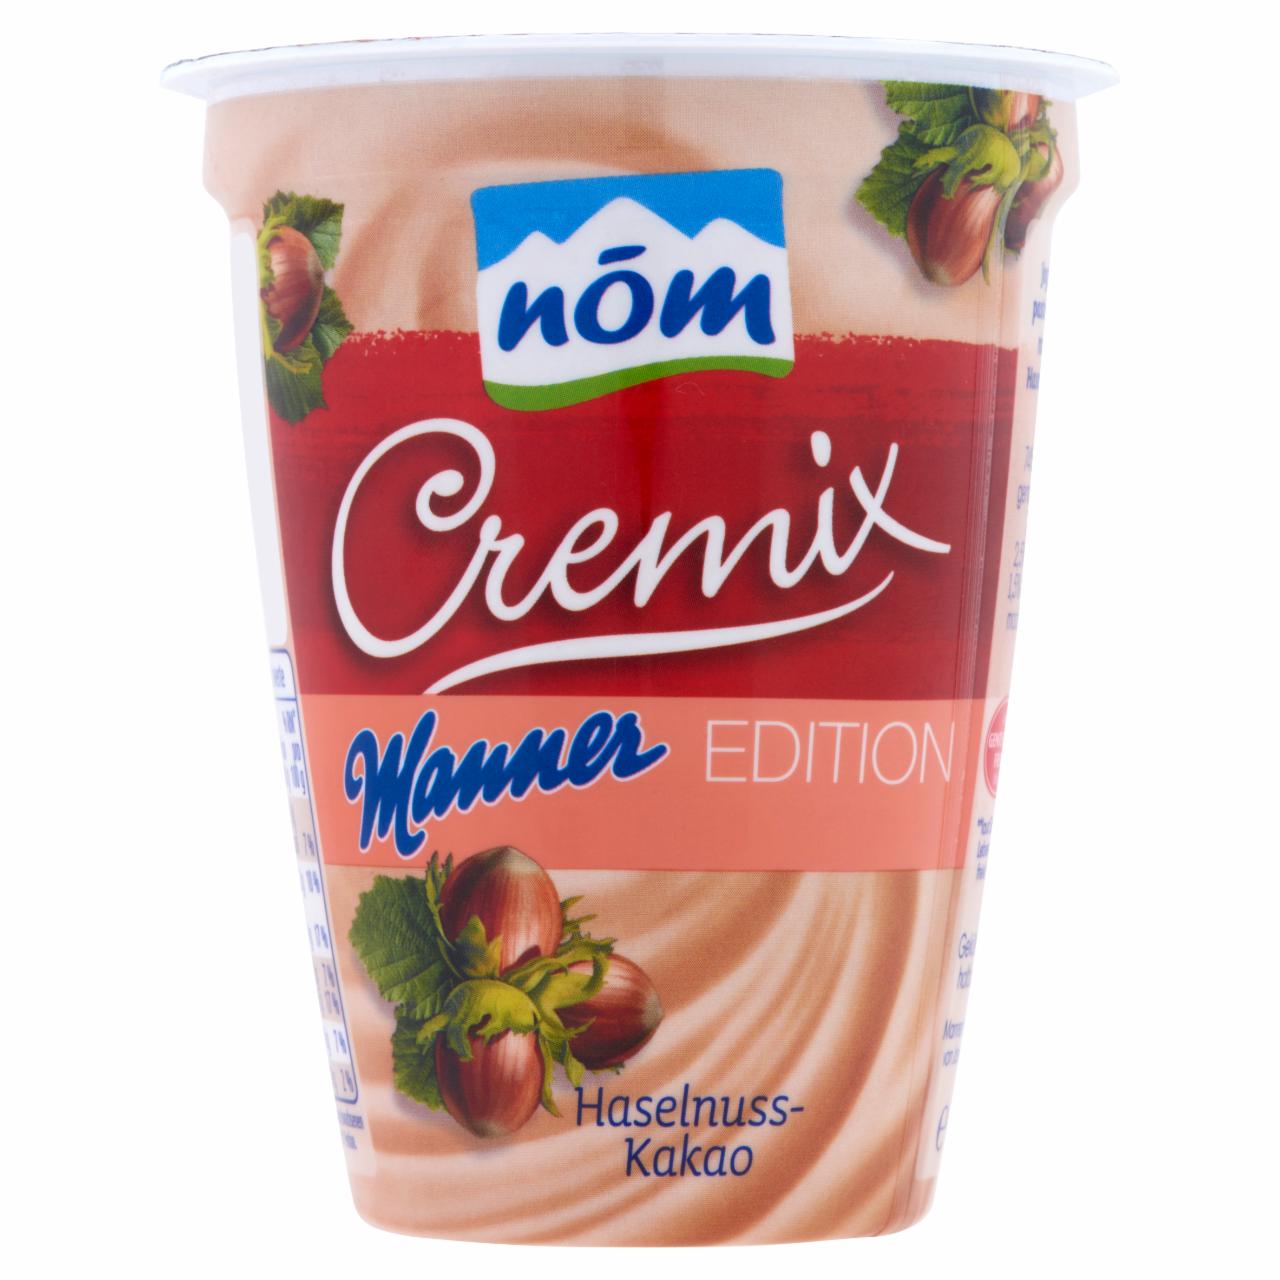 Képek - NÖM Cremix Manner Edition krémes joghurt mogyoróval és kakaóval 180 g